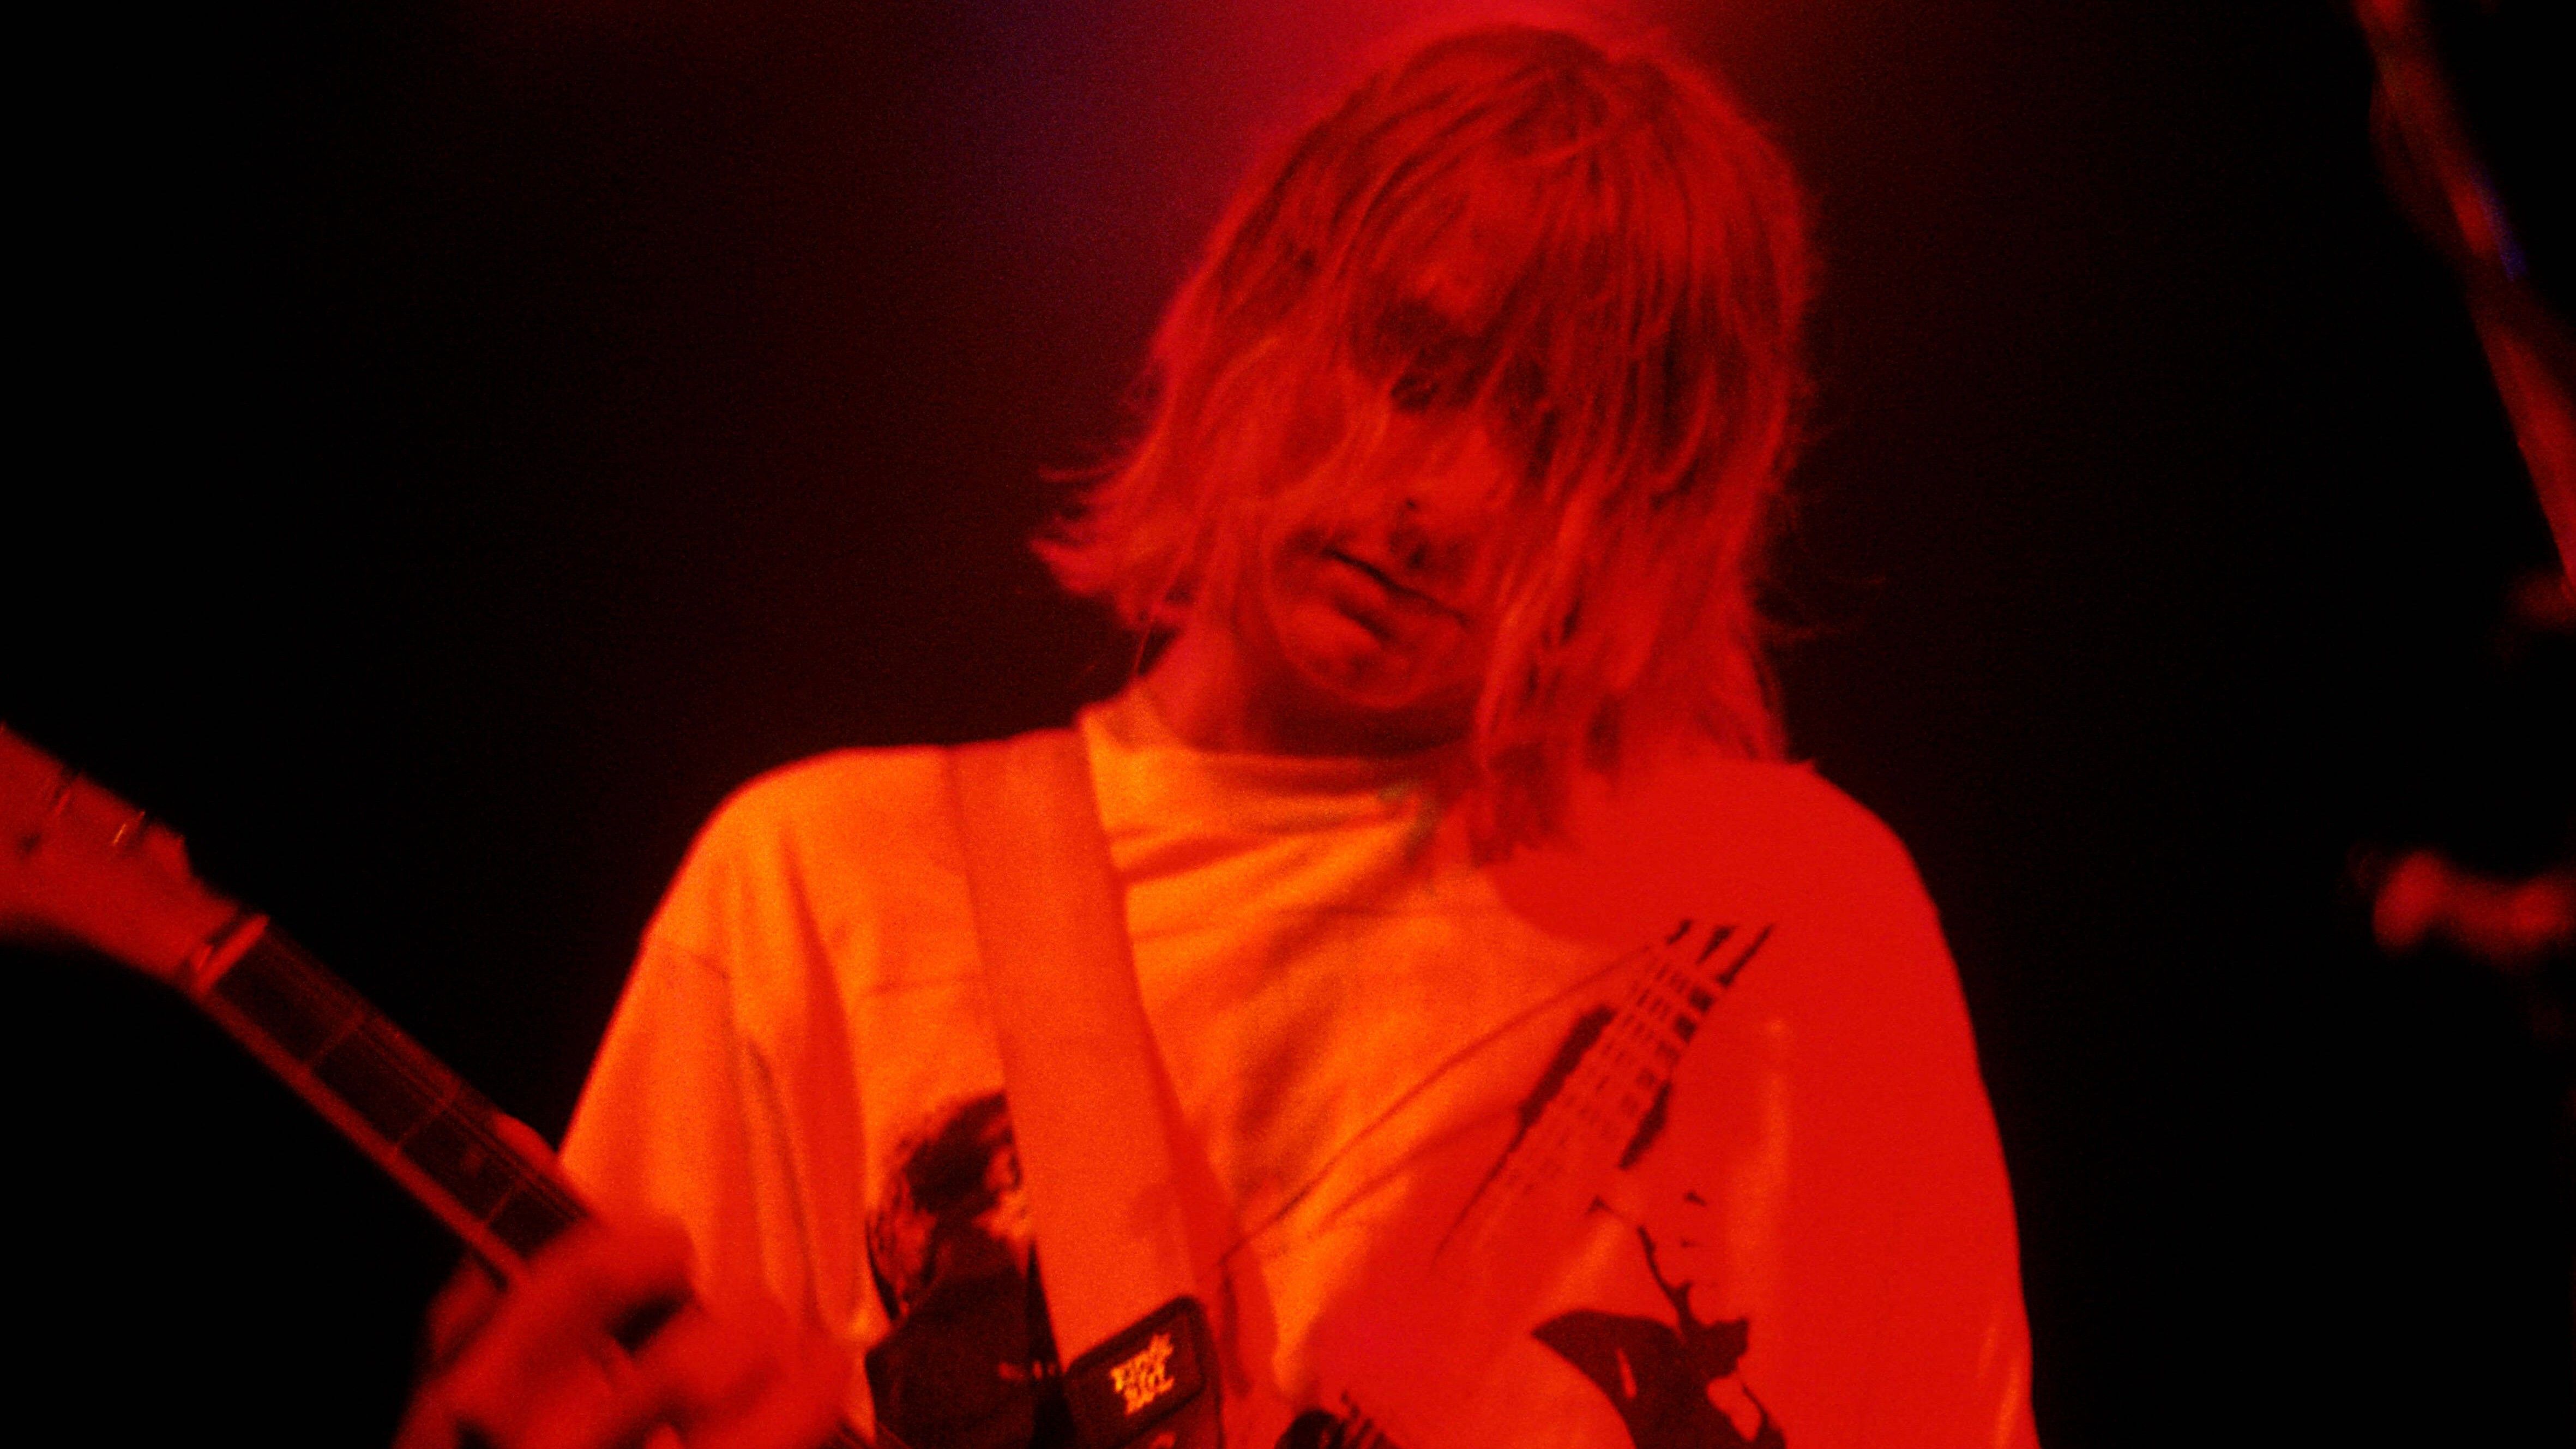 
                <strong>Kurt Cobain begeht Selbstmord</strong><br>
                Im April 1994 wurde Kurt Cobain tot in einem Hotelzimmer gefunden. Berauscht von einer Überdosis erschoss sich der Sänger, der einen Abschiedsbrief hinterließ. Zuvor war er mit der Band Nirvana global erfolgreich.
              